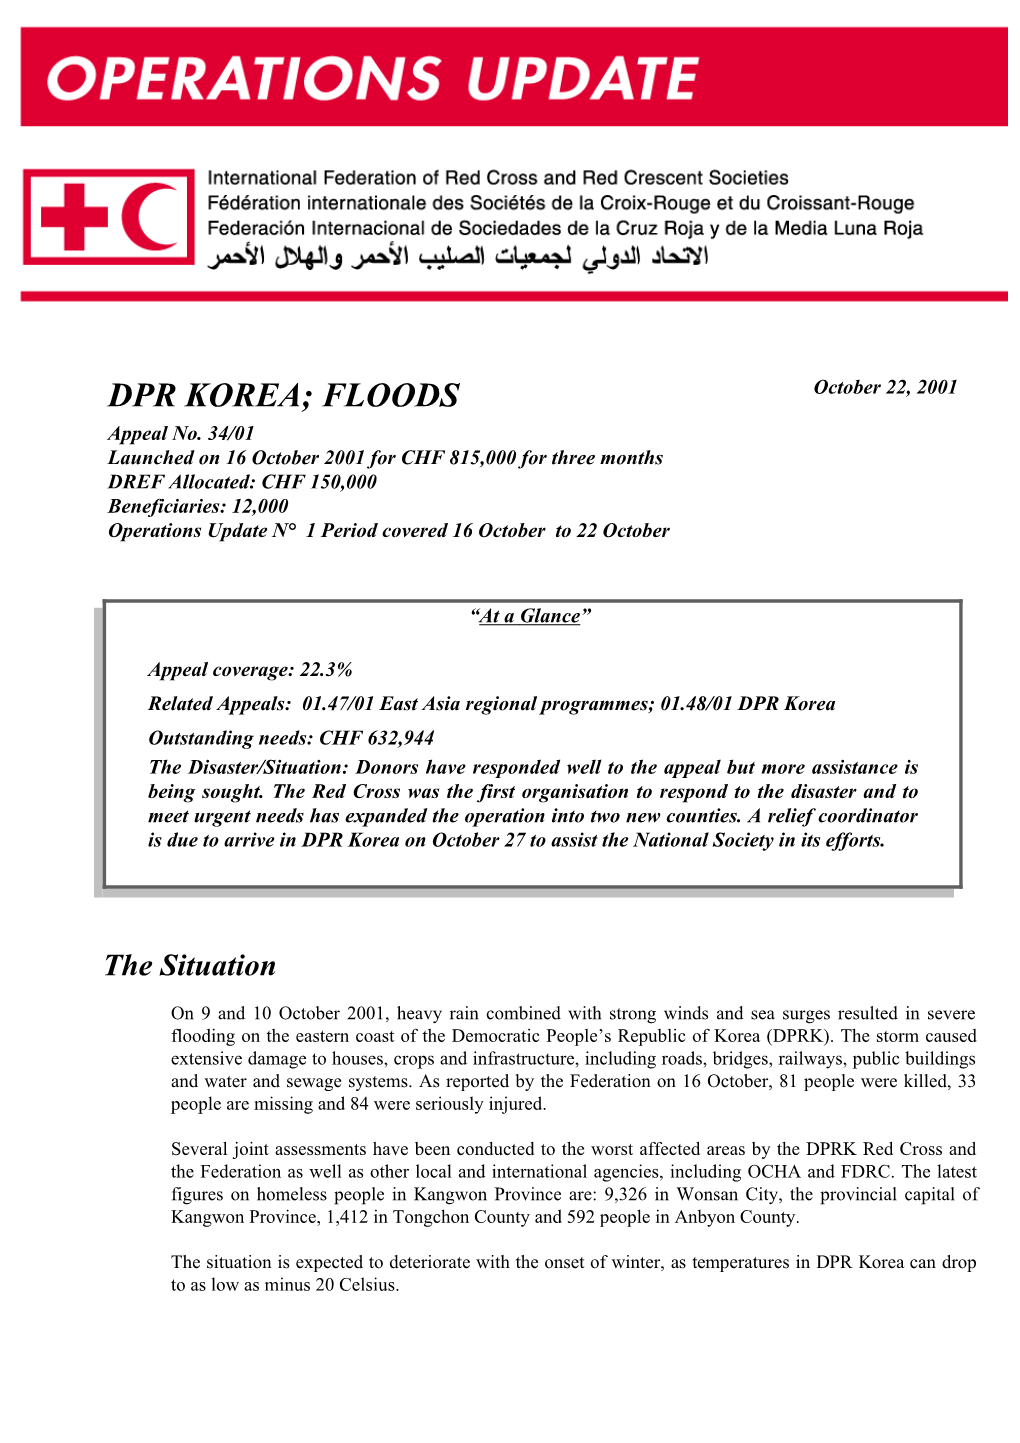 DPRK Floods Operations Update No. 1